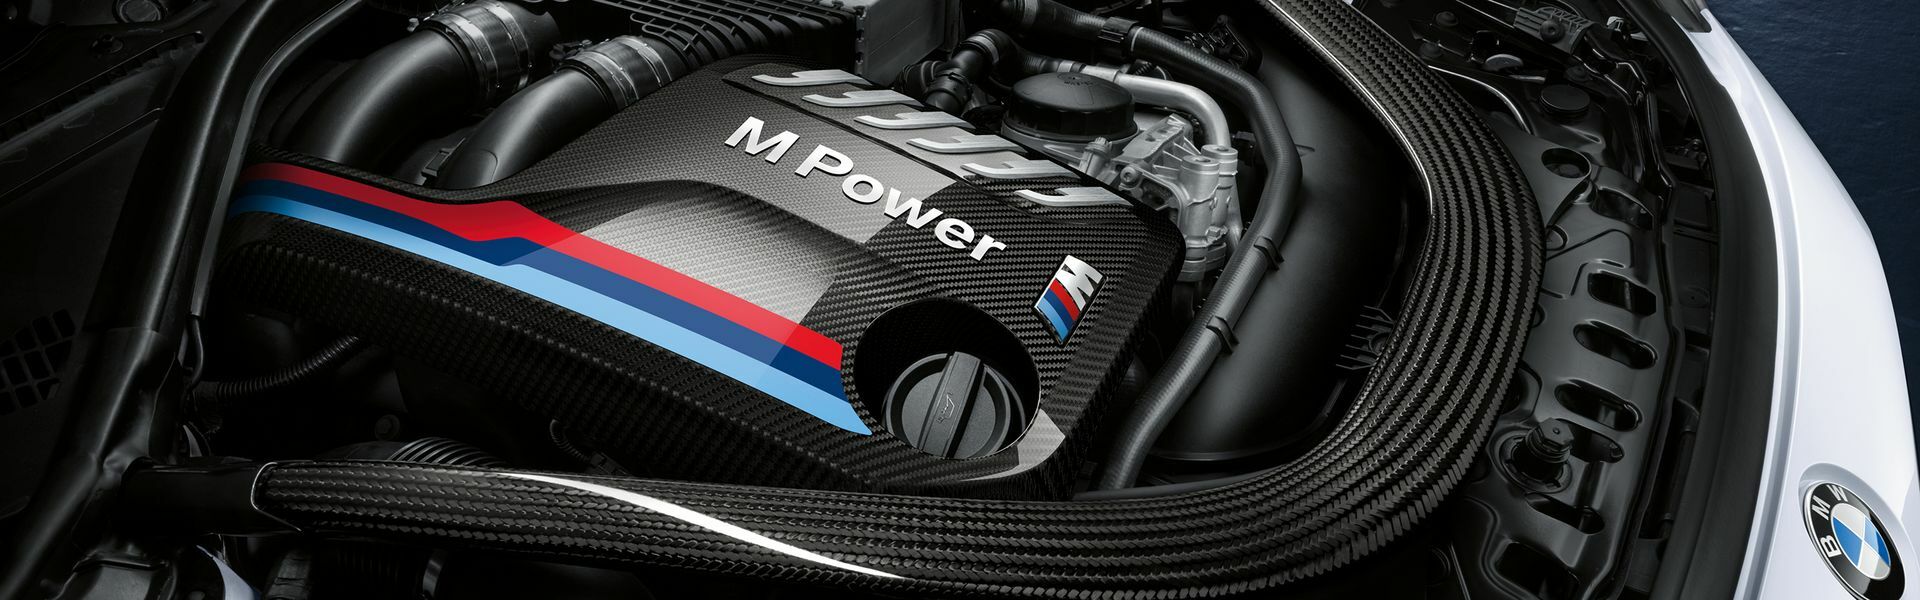 Zvýšení výkonu/ Softwarové úpravy/ Drobné performance díly pro automobil BMW 440i F32 F33 F36